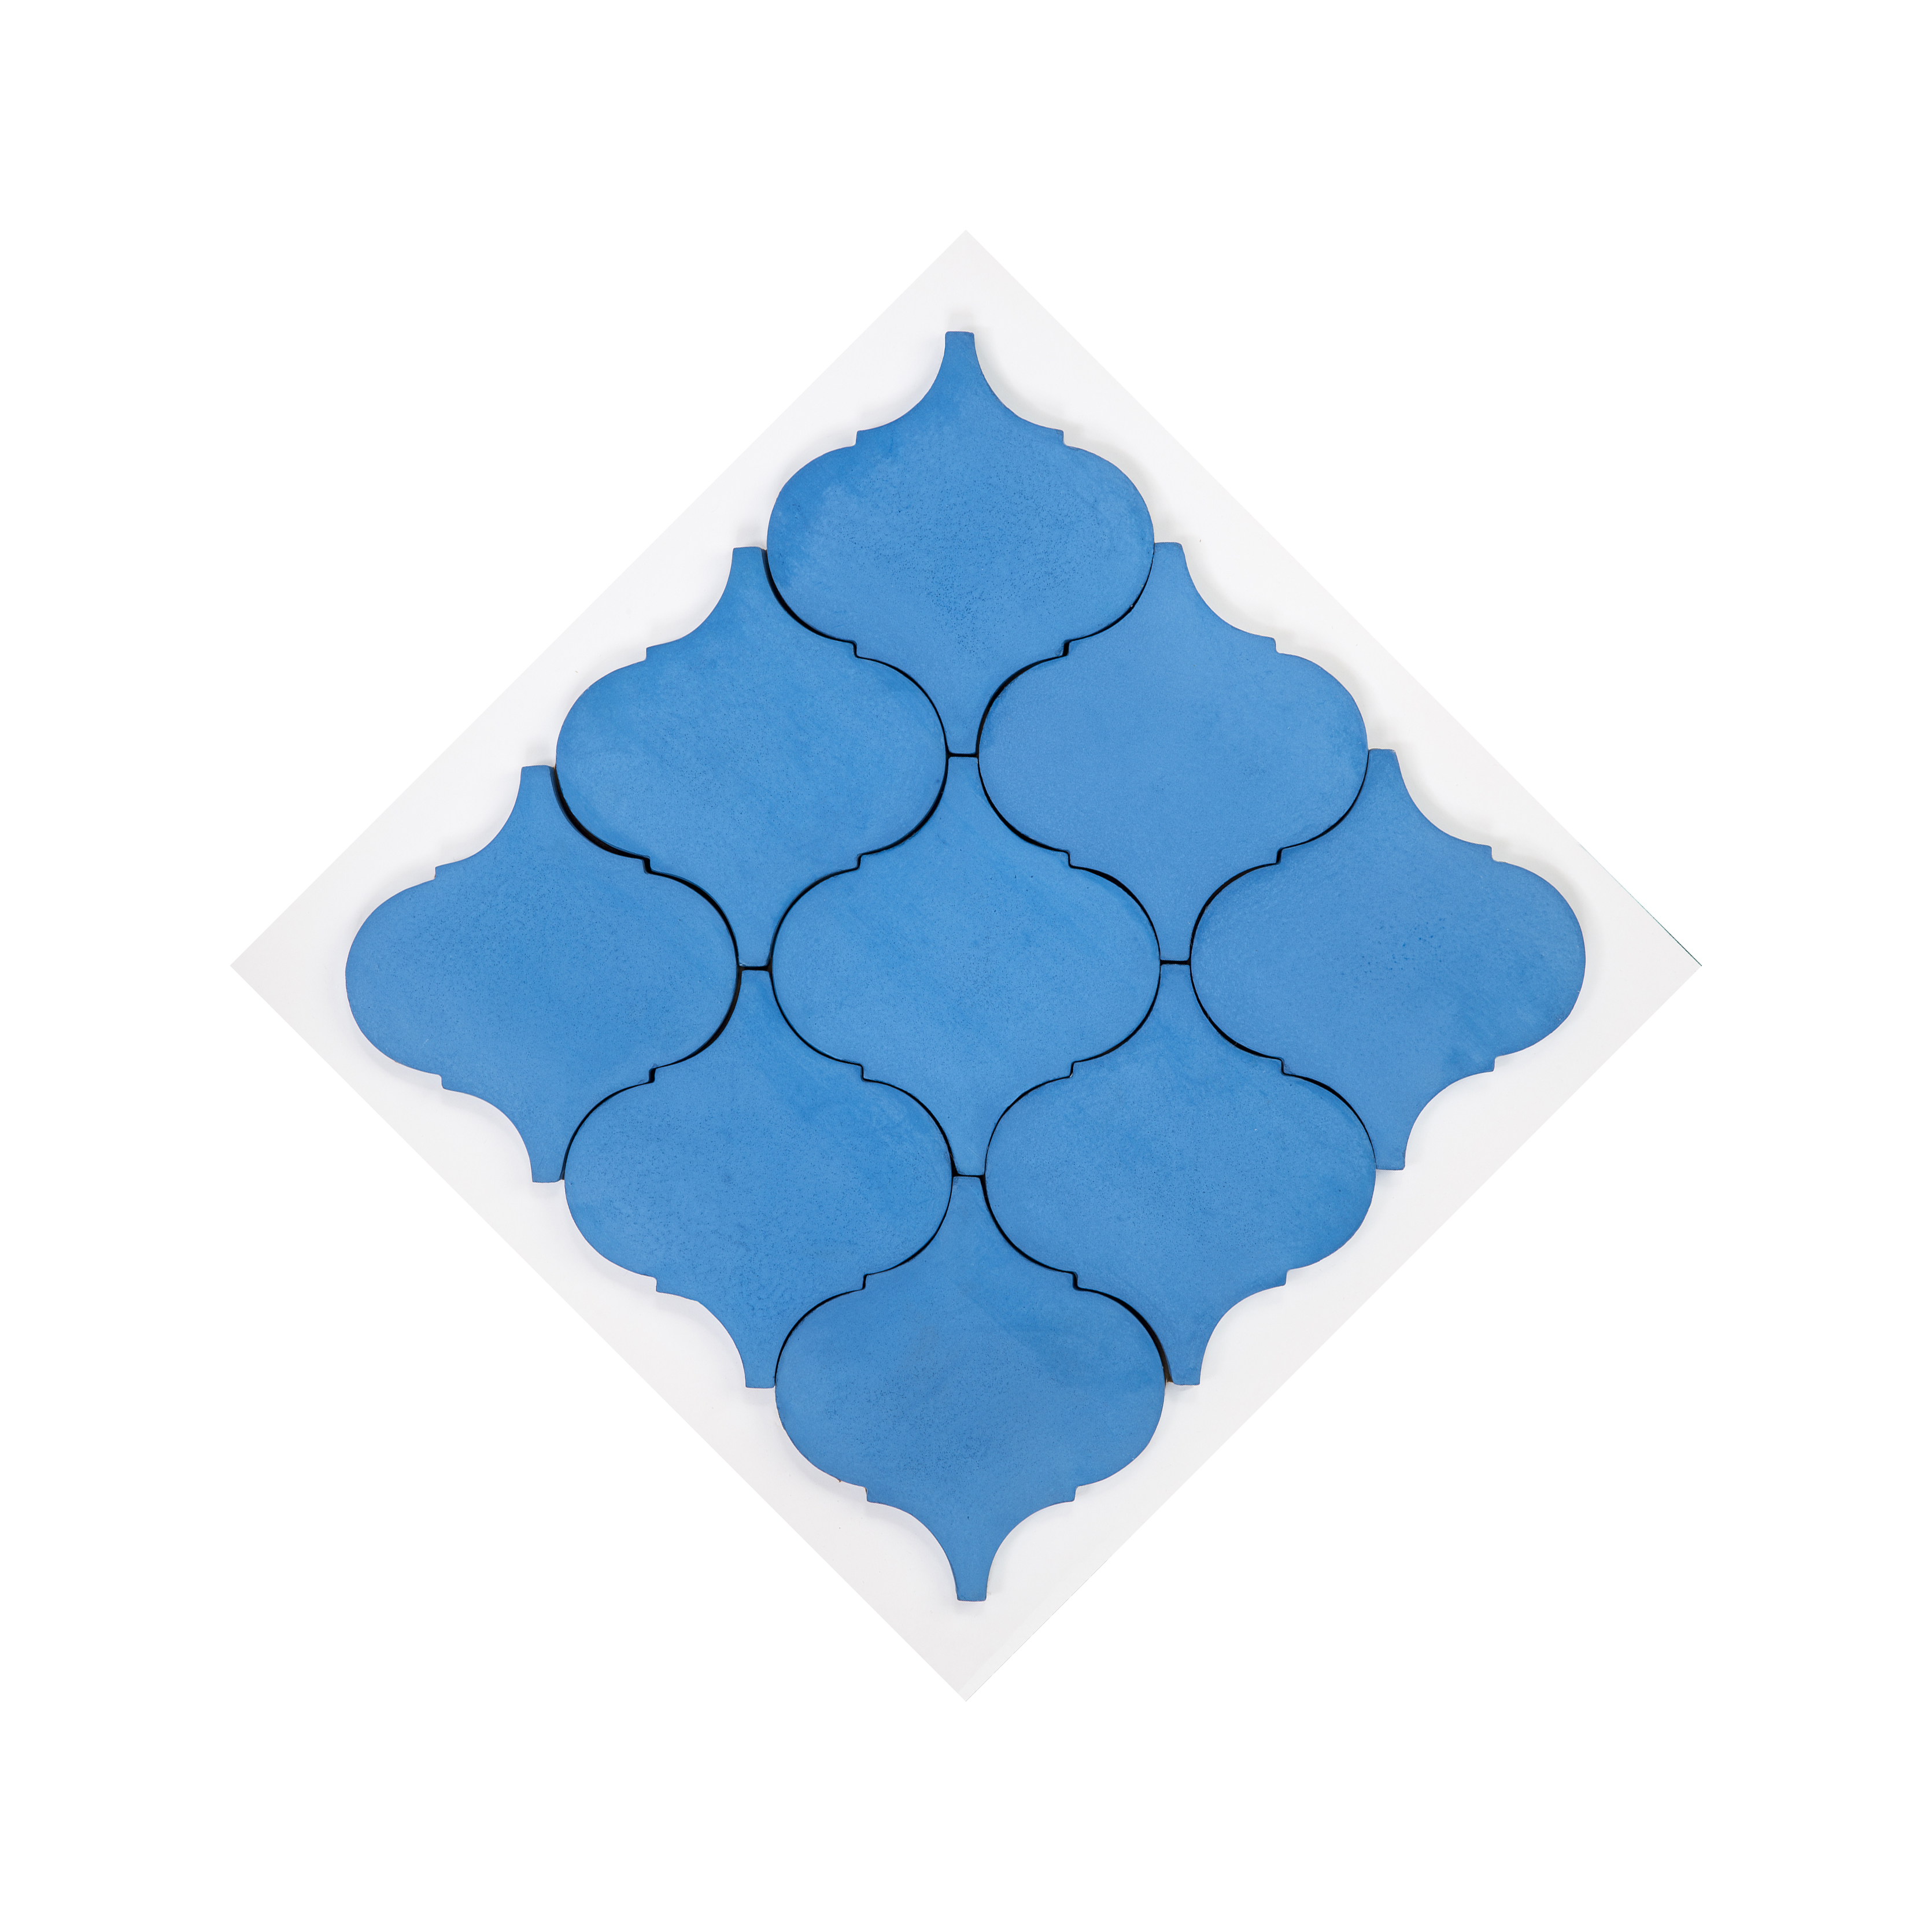 Moorish lantern tiles - Arabesque tiles